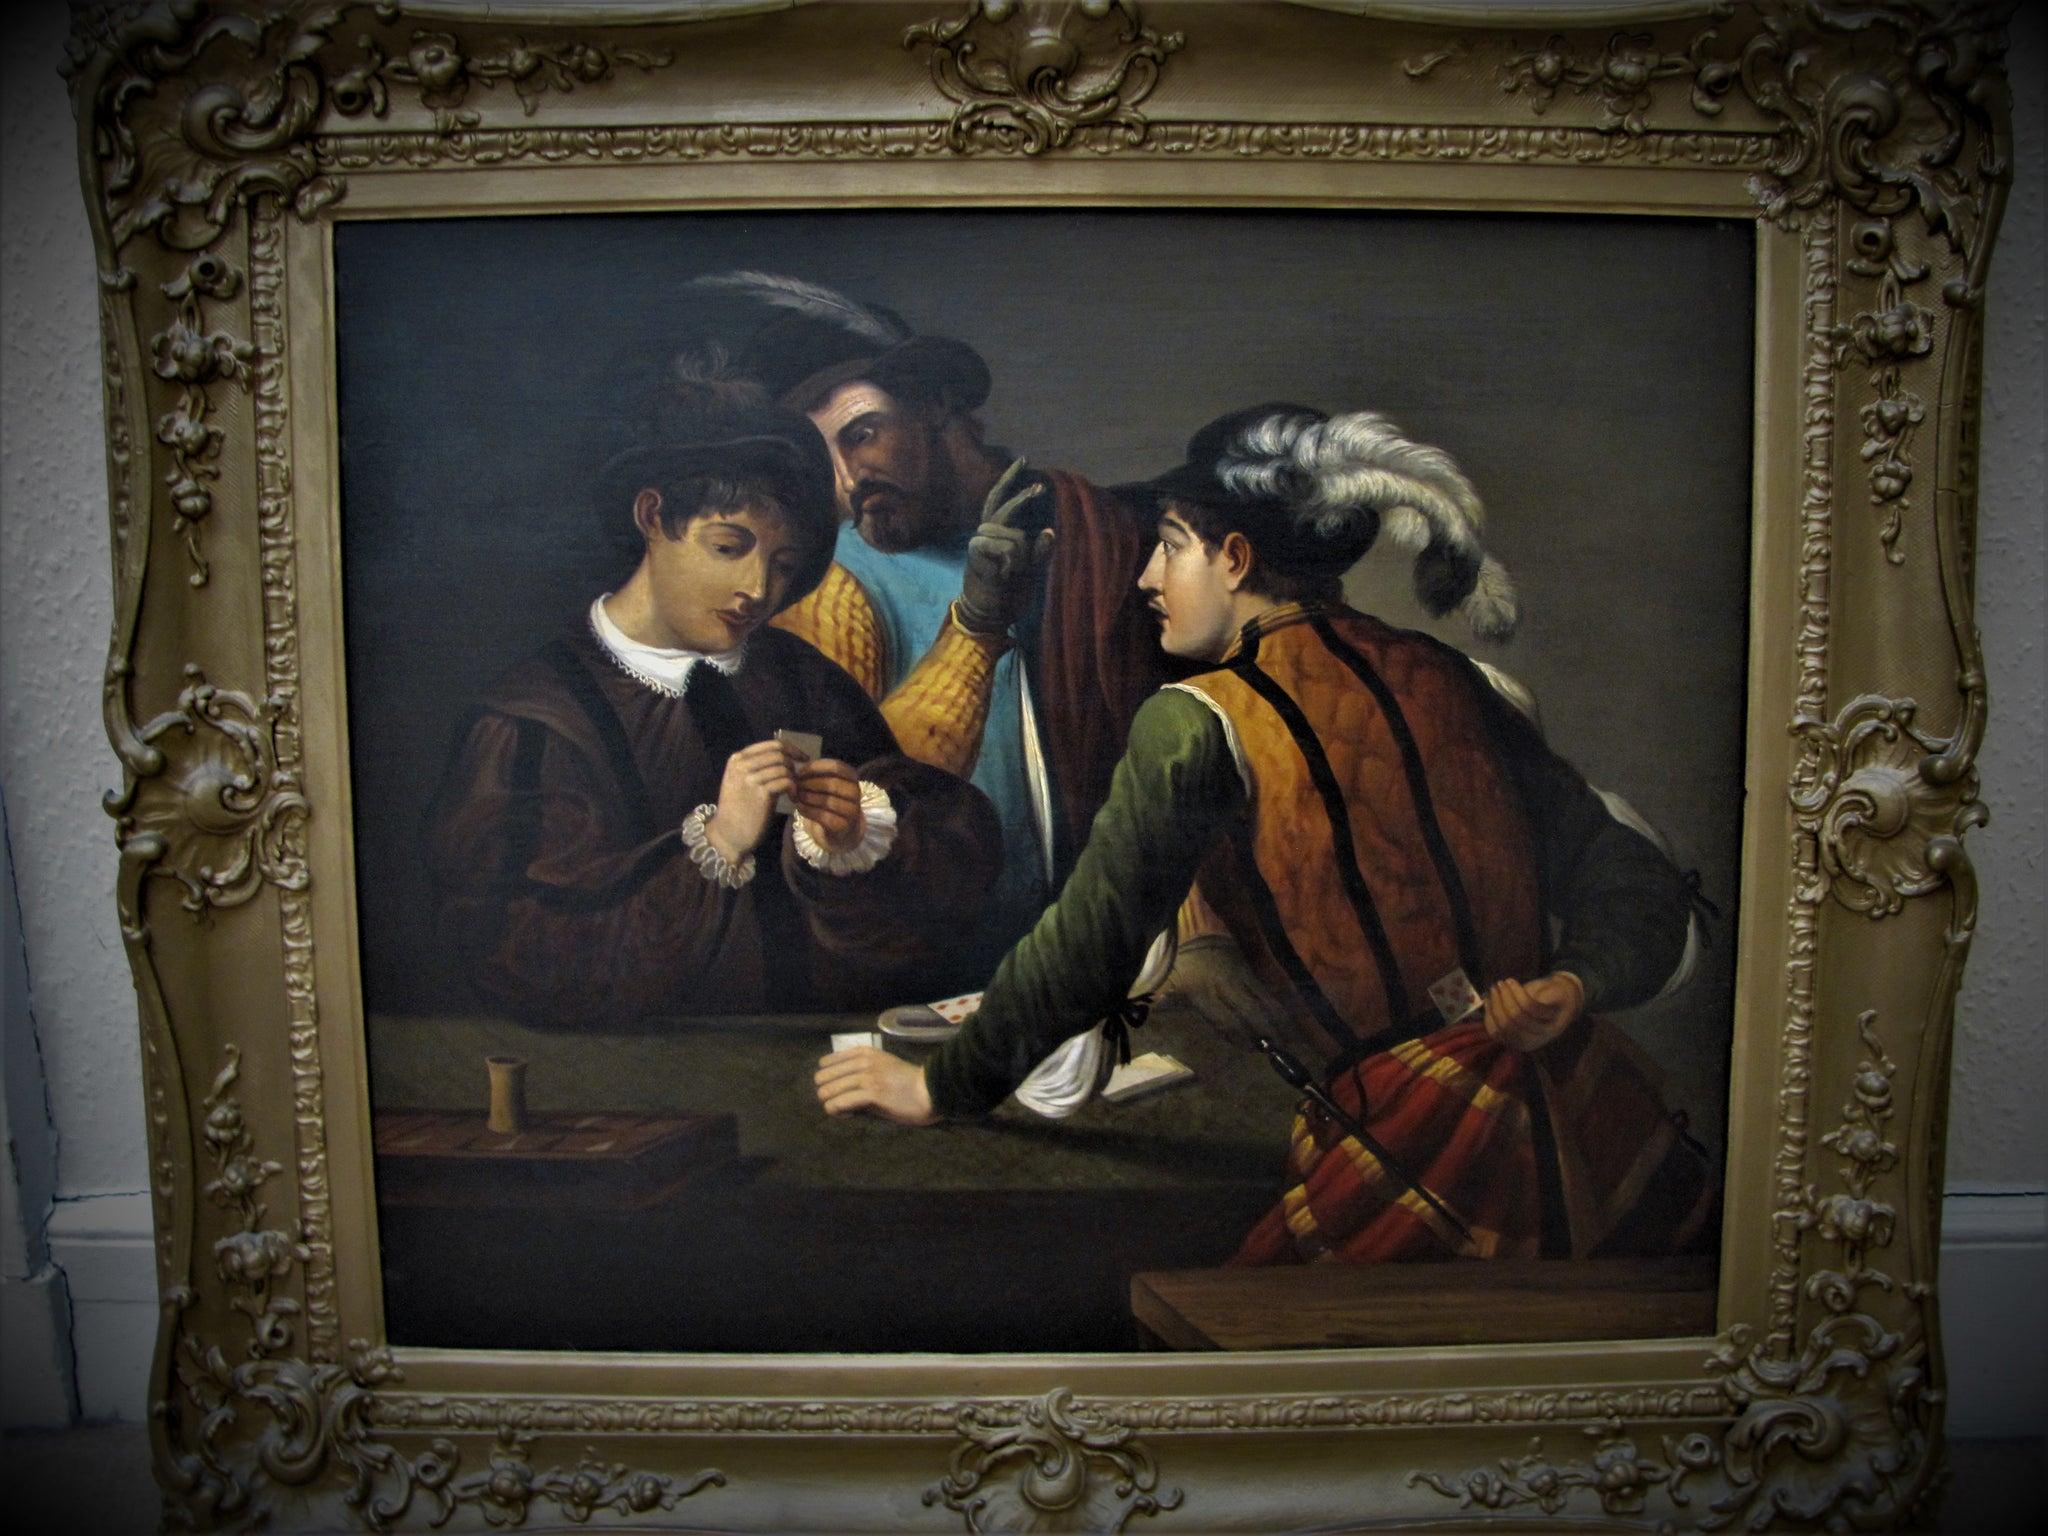 Portrait du 19e siècle d'après le caravaggio « Les pinces à cartes » - Painting de (After) Caravaggio